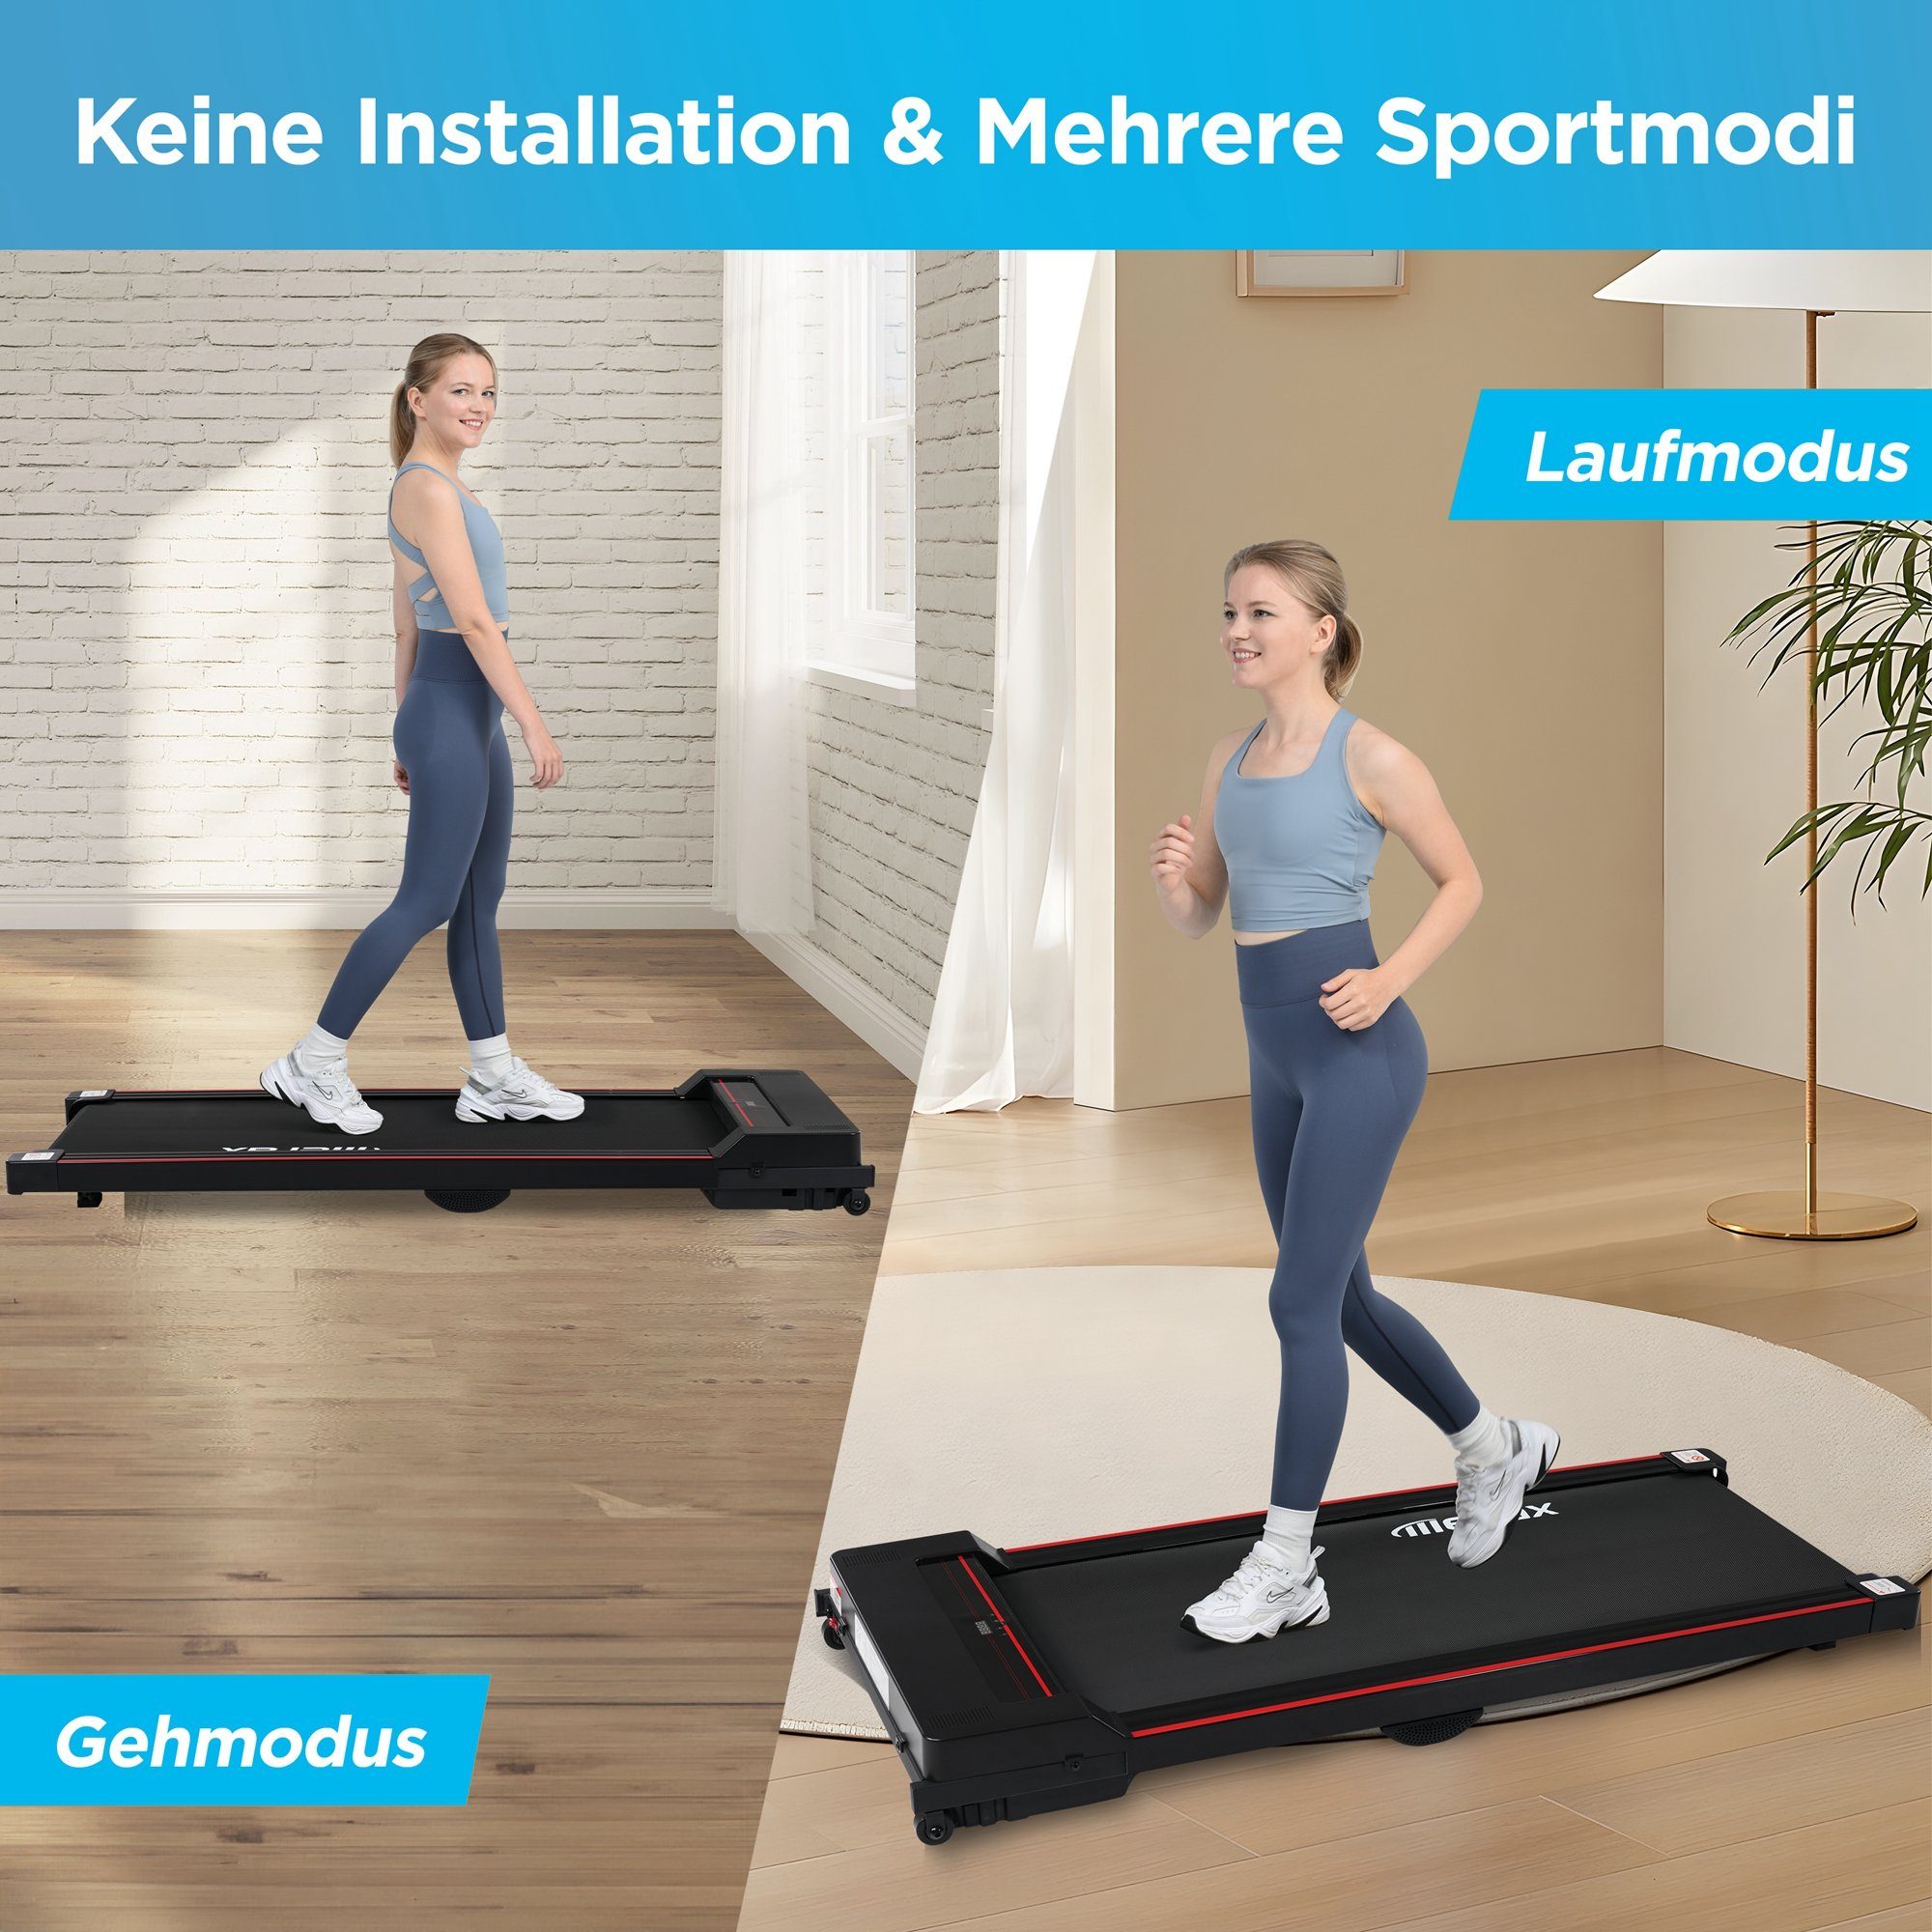 KM/H, Laufband, Jogging Walking Pad Underdesk 1-8 Treadmill, Merax